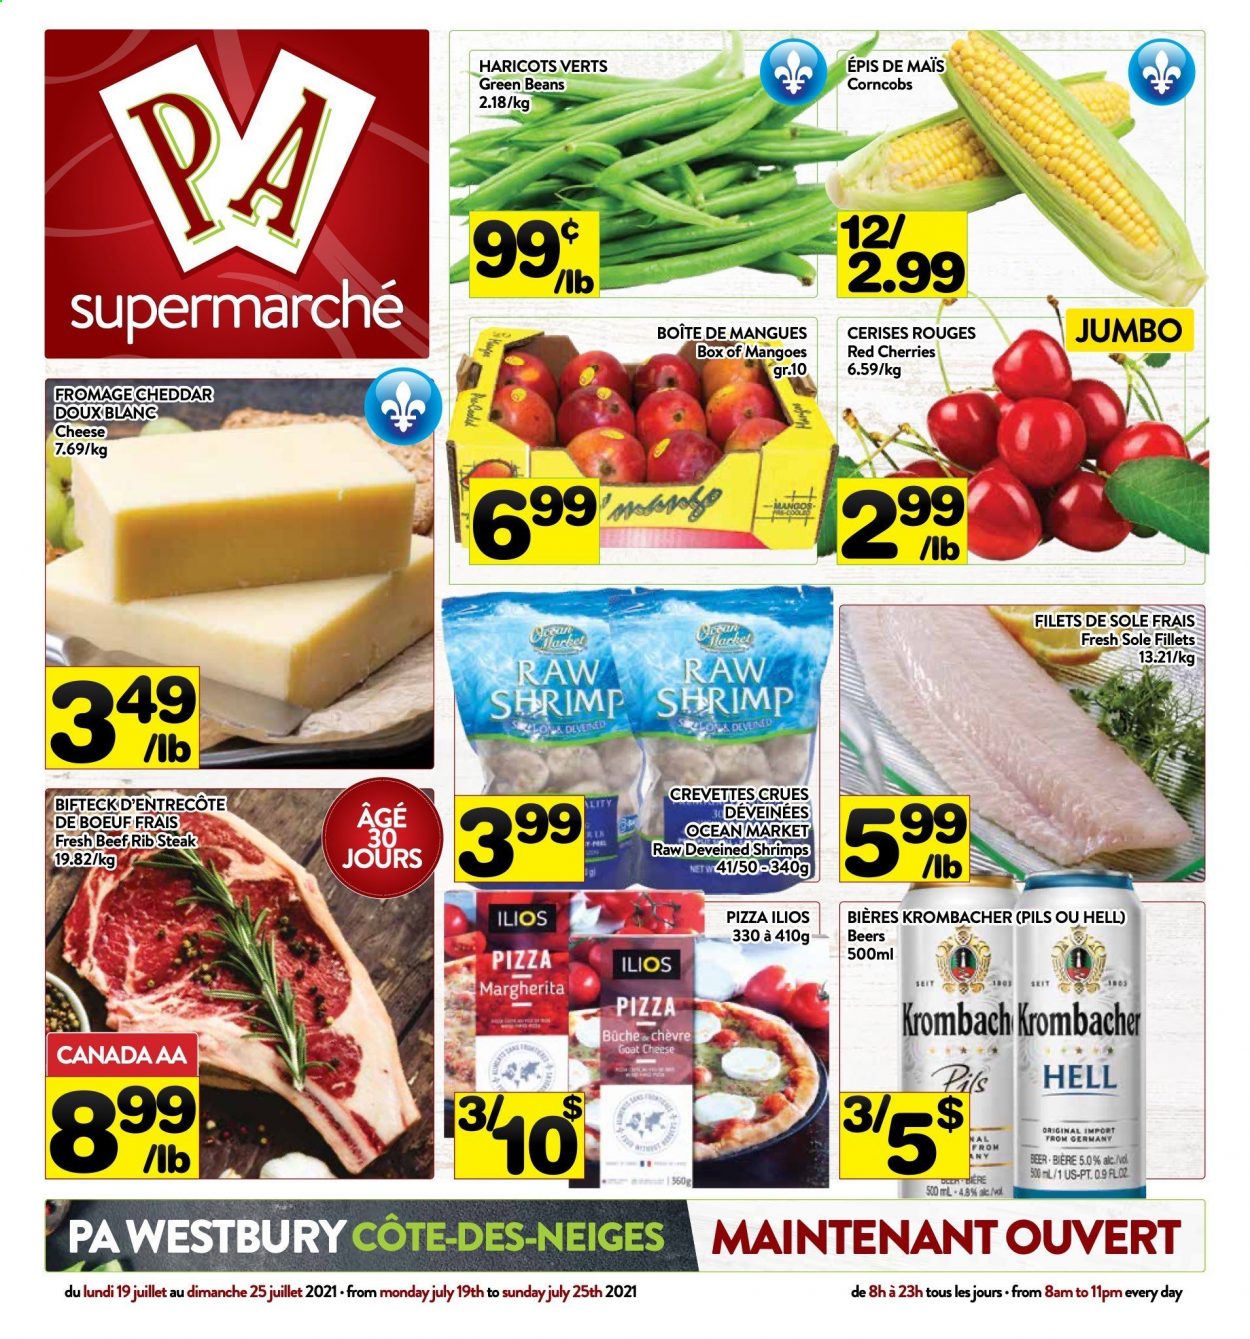 thumbnail - Circulaire PA Supermarché - 19 Juillet 2021 - 25 Juillet 2021 - Produits soldés - cerises, pizza, haricots, bière, crevettes, steak. Page 1.